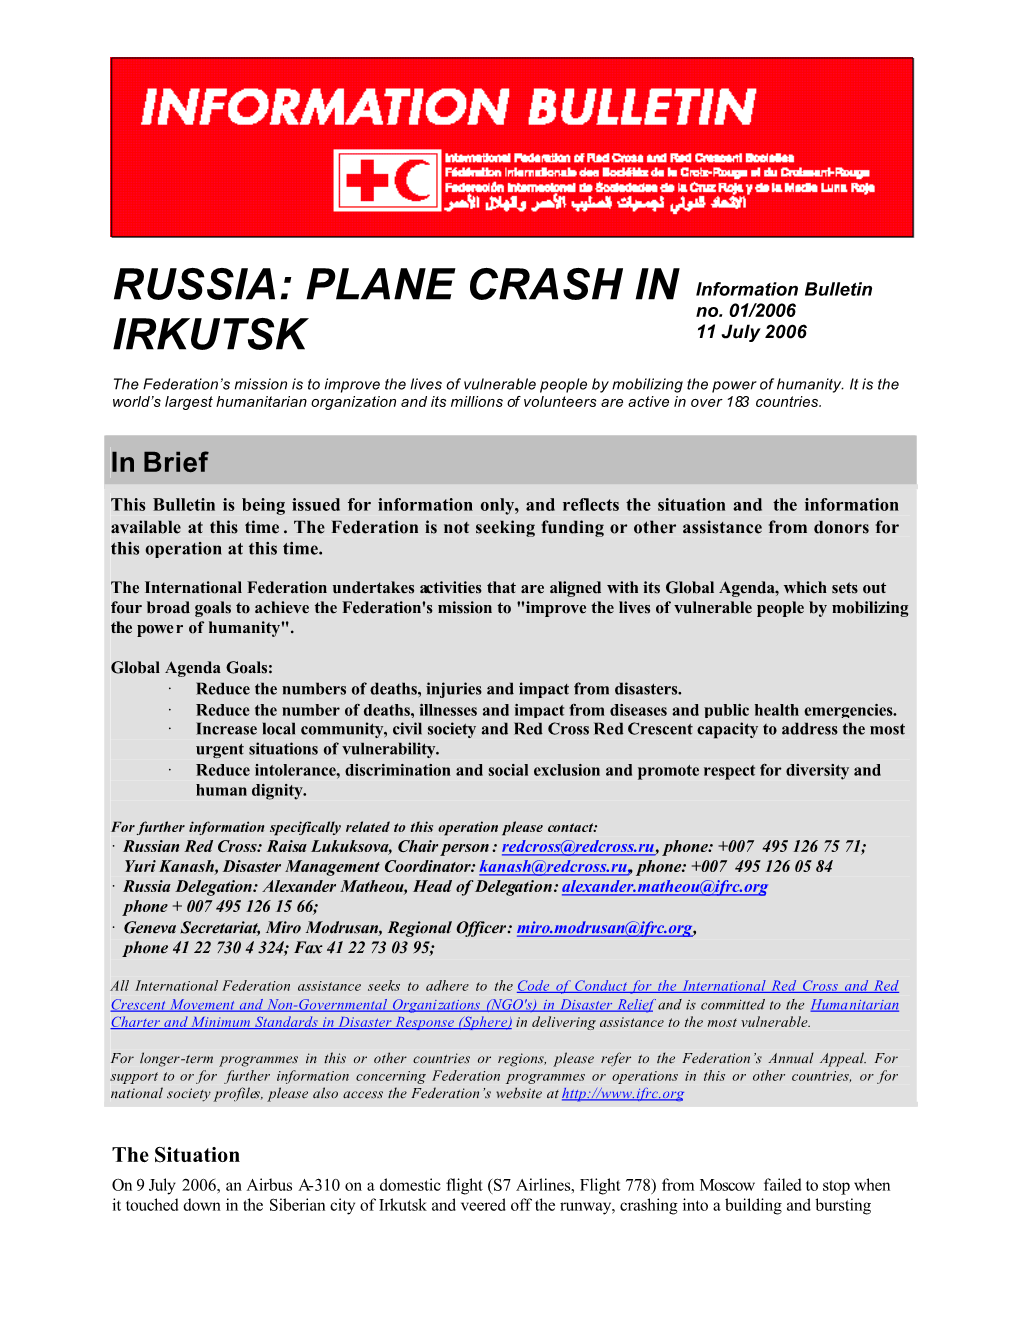 Irkutsk Plane Crash Info Bull